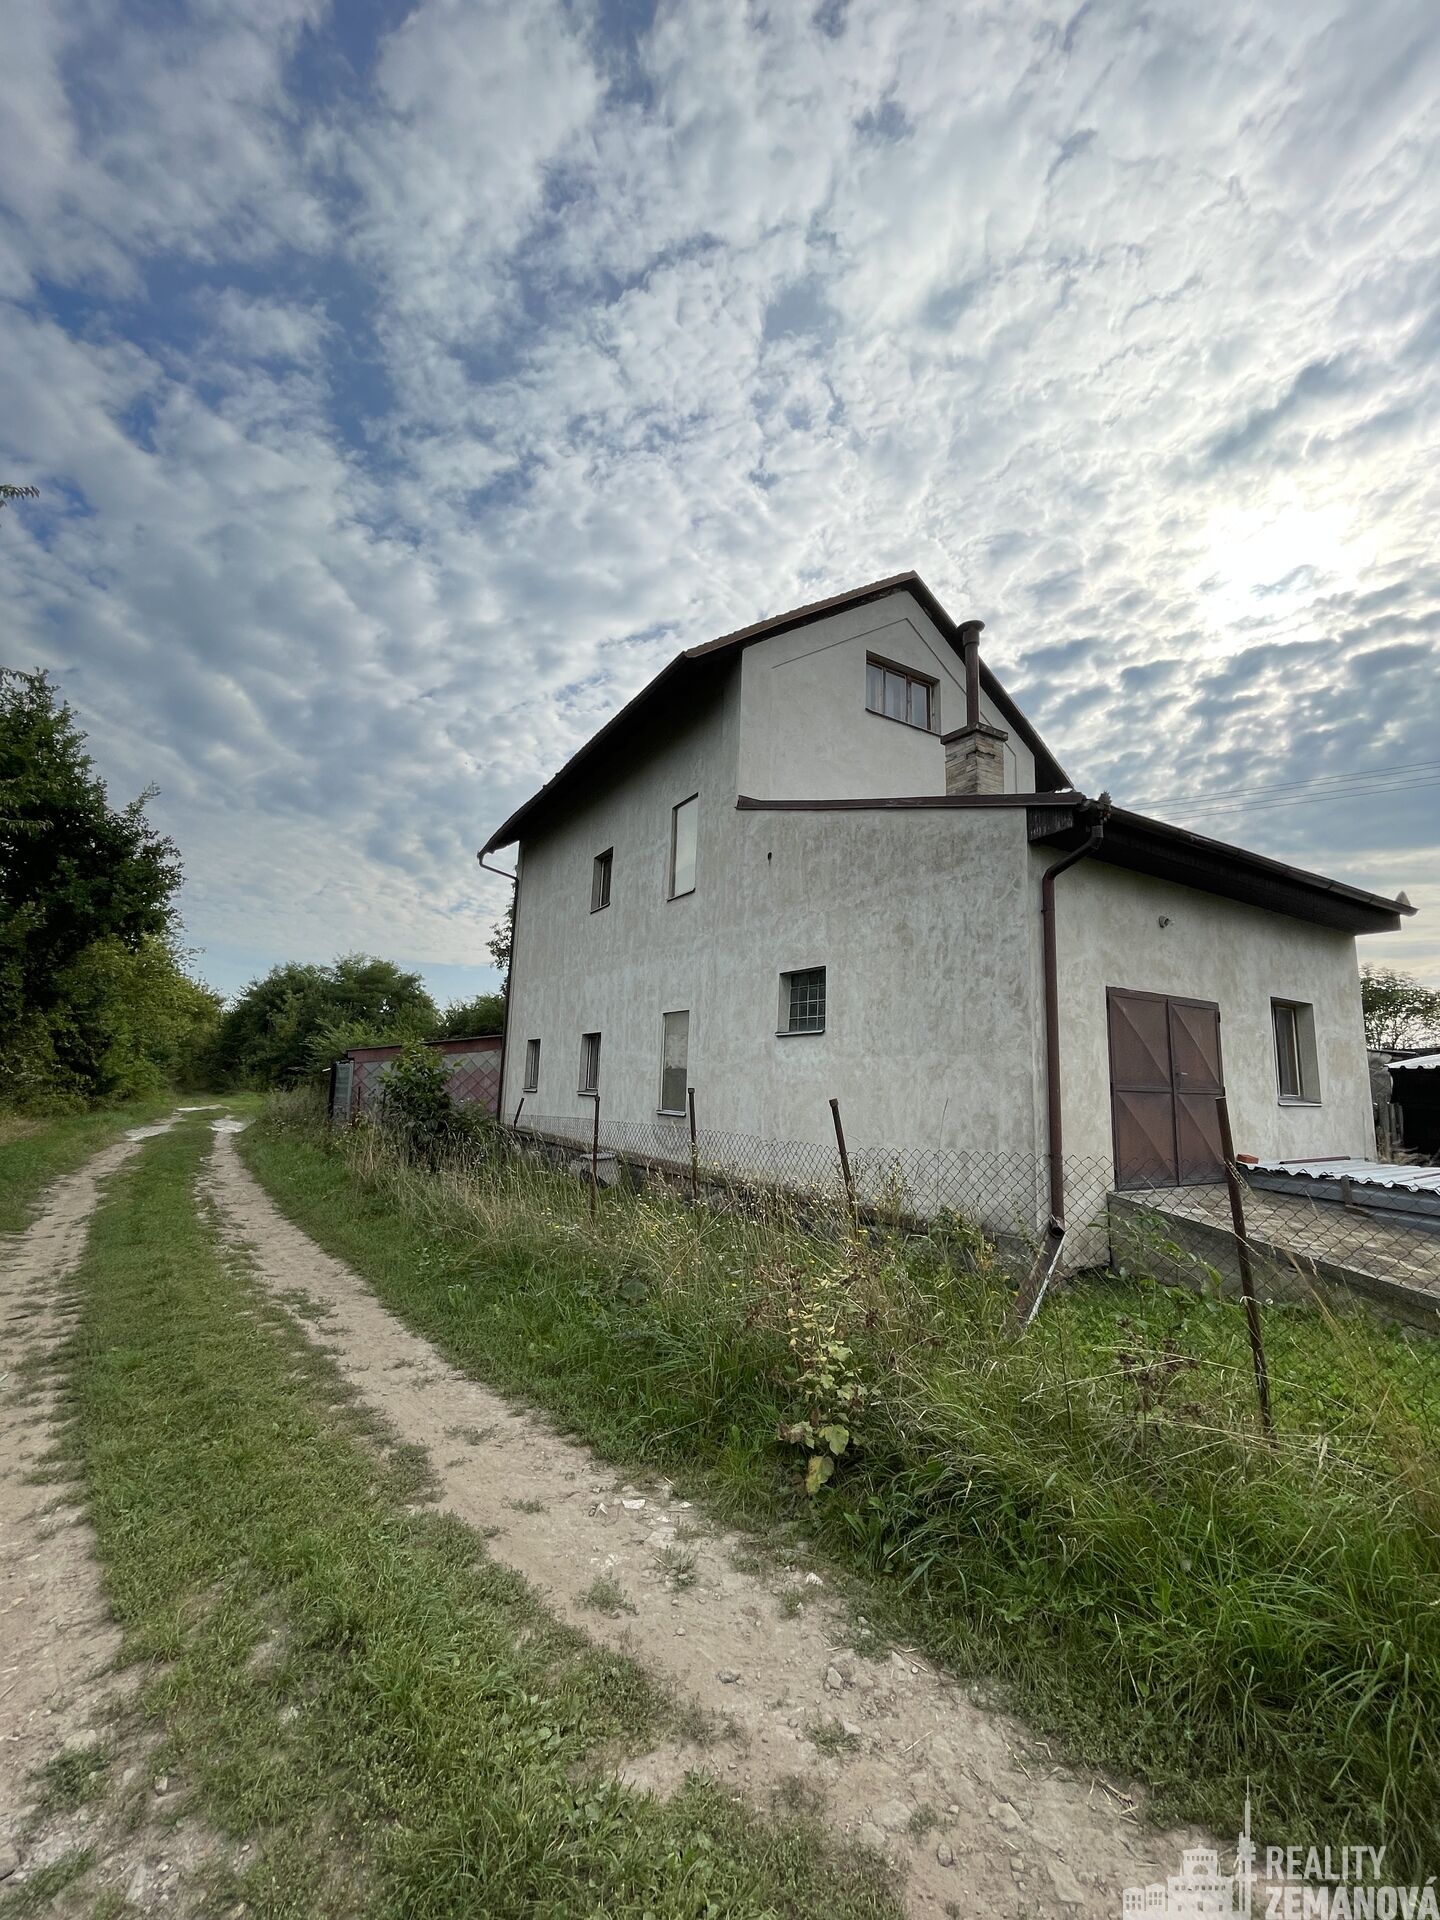 Prodej patrového domu se sklepením (bývalá nádražní budova), zahradou a dílnou, Močovice u Čáslavi.